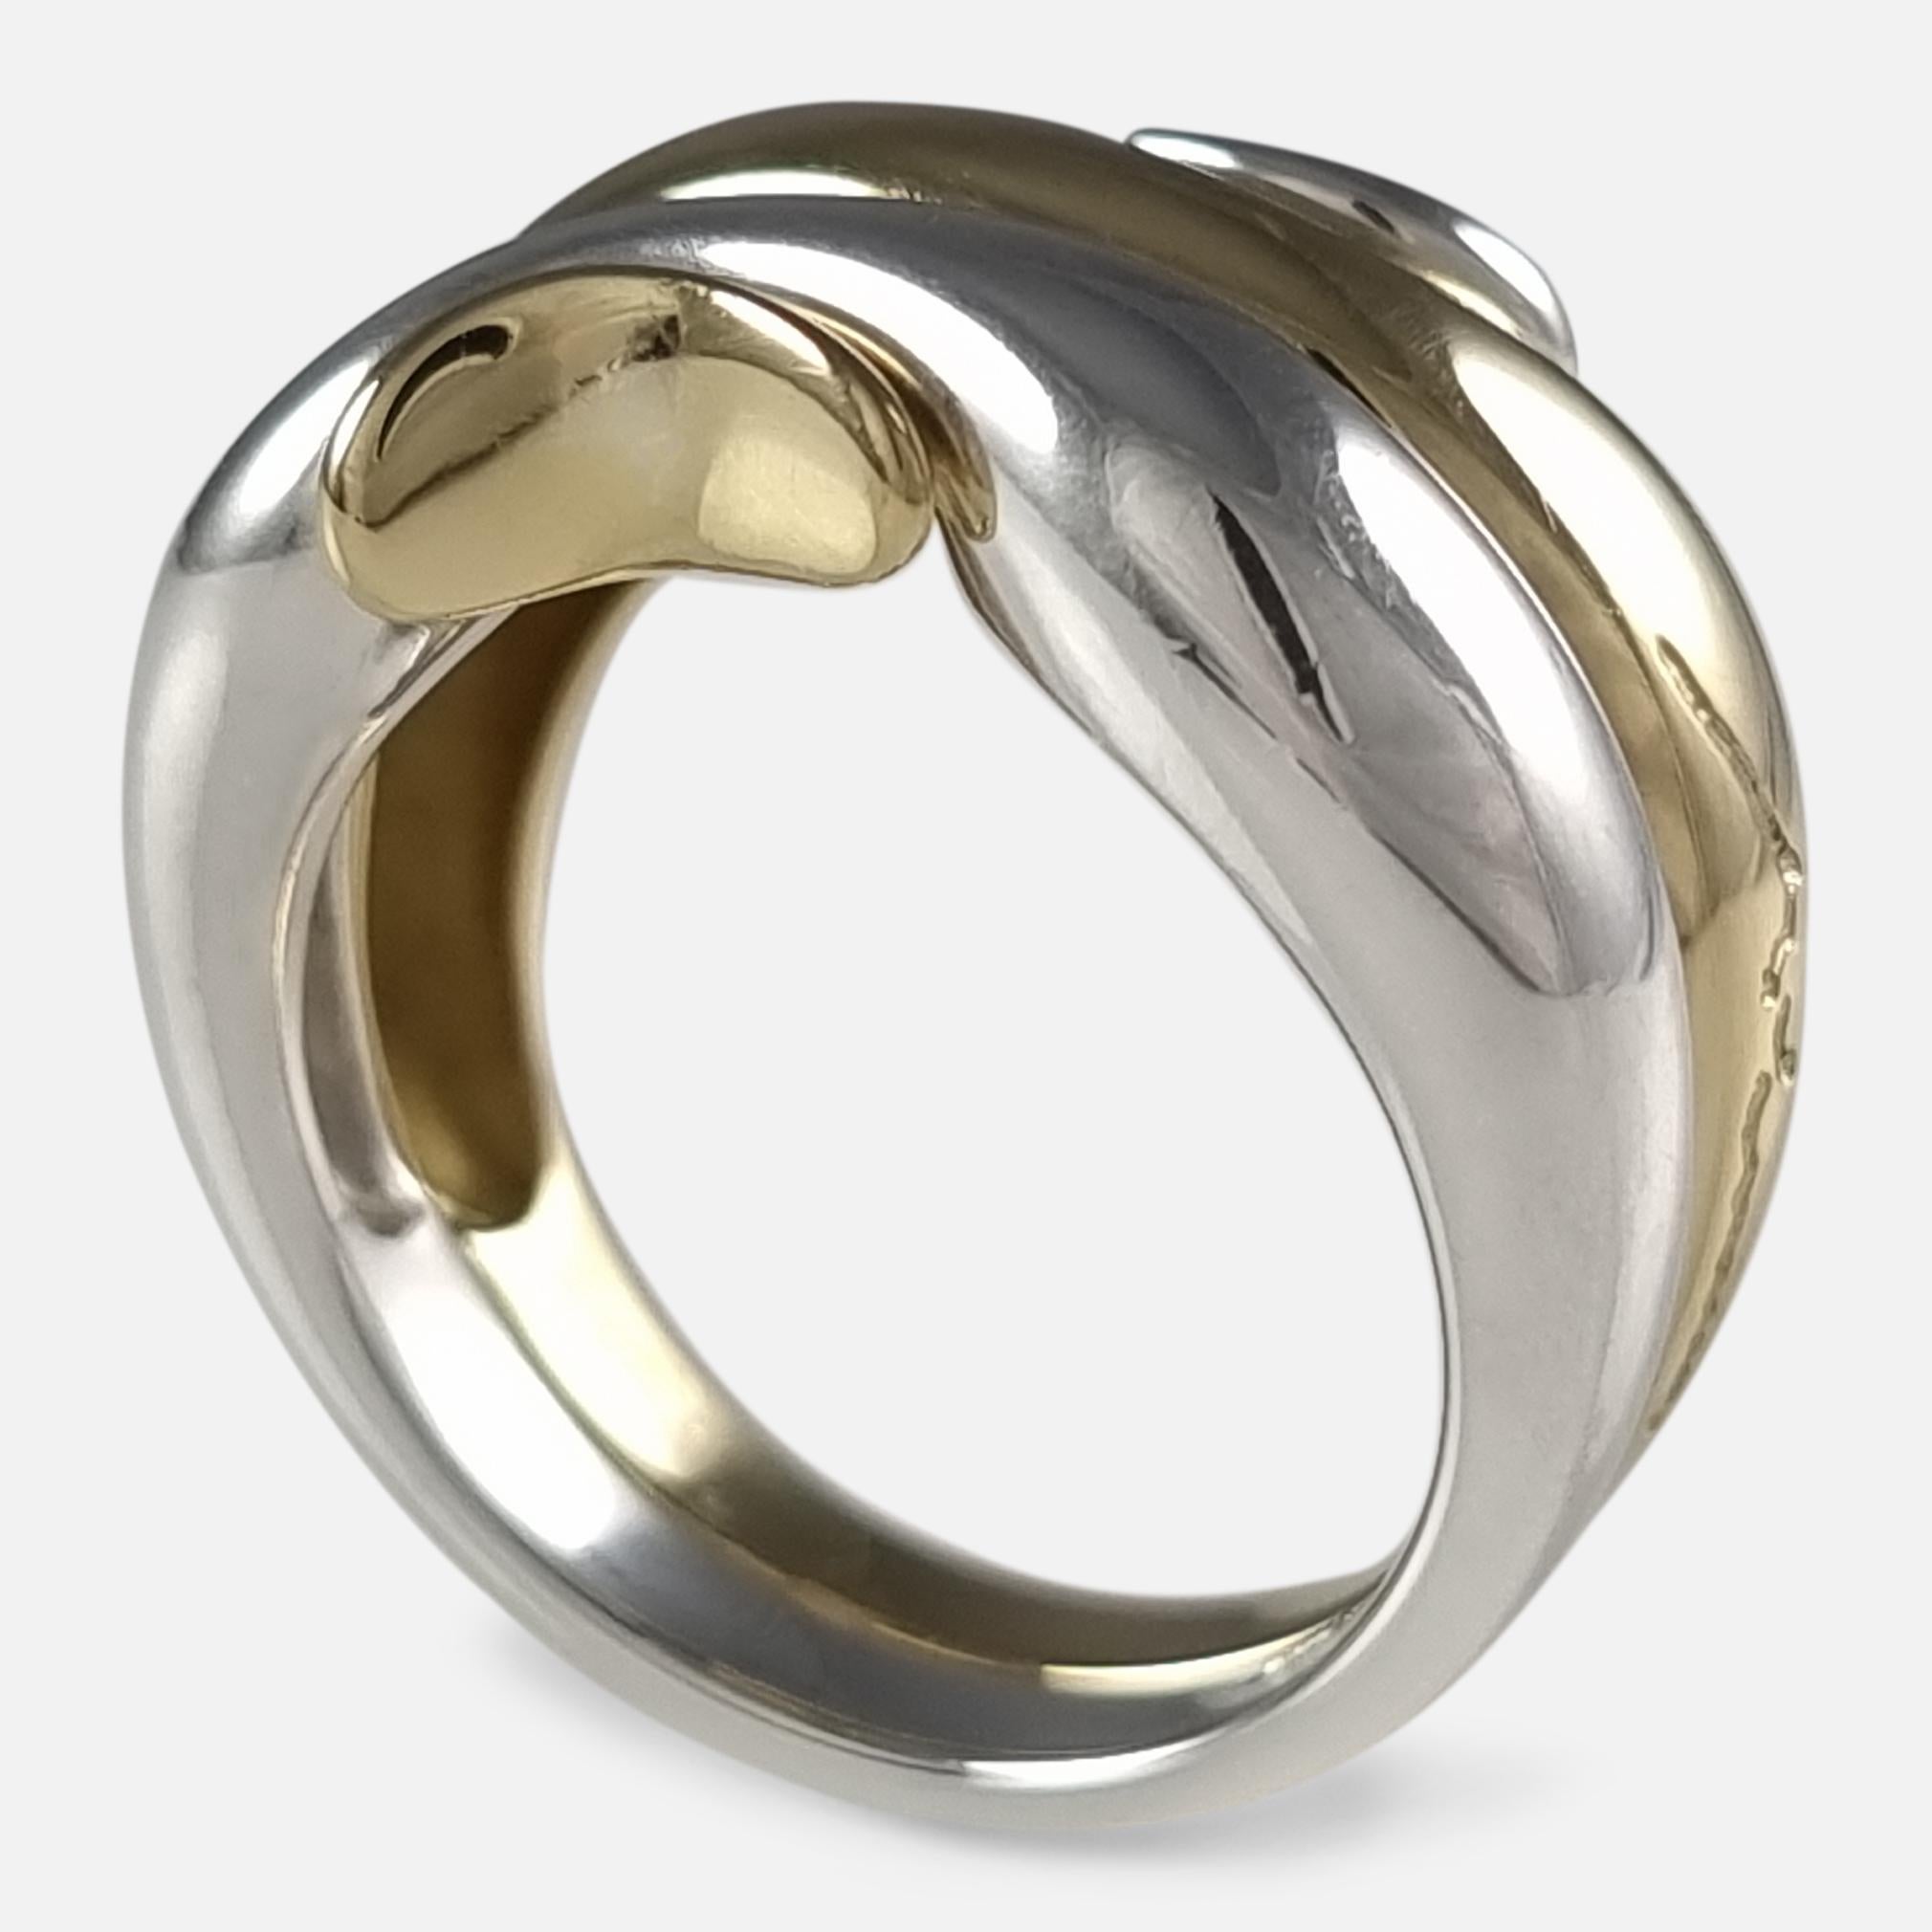 George Jensen 18ct Gold & Silver Ring, Minas Spiridis 13